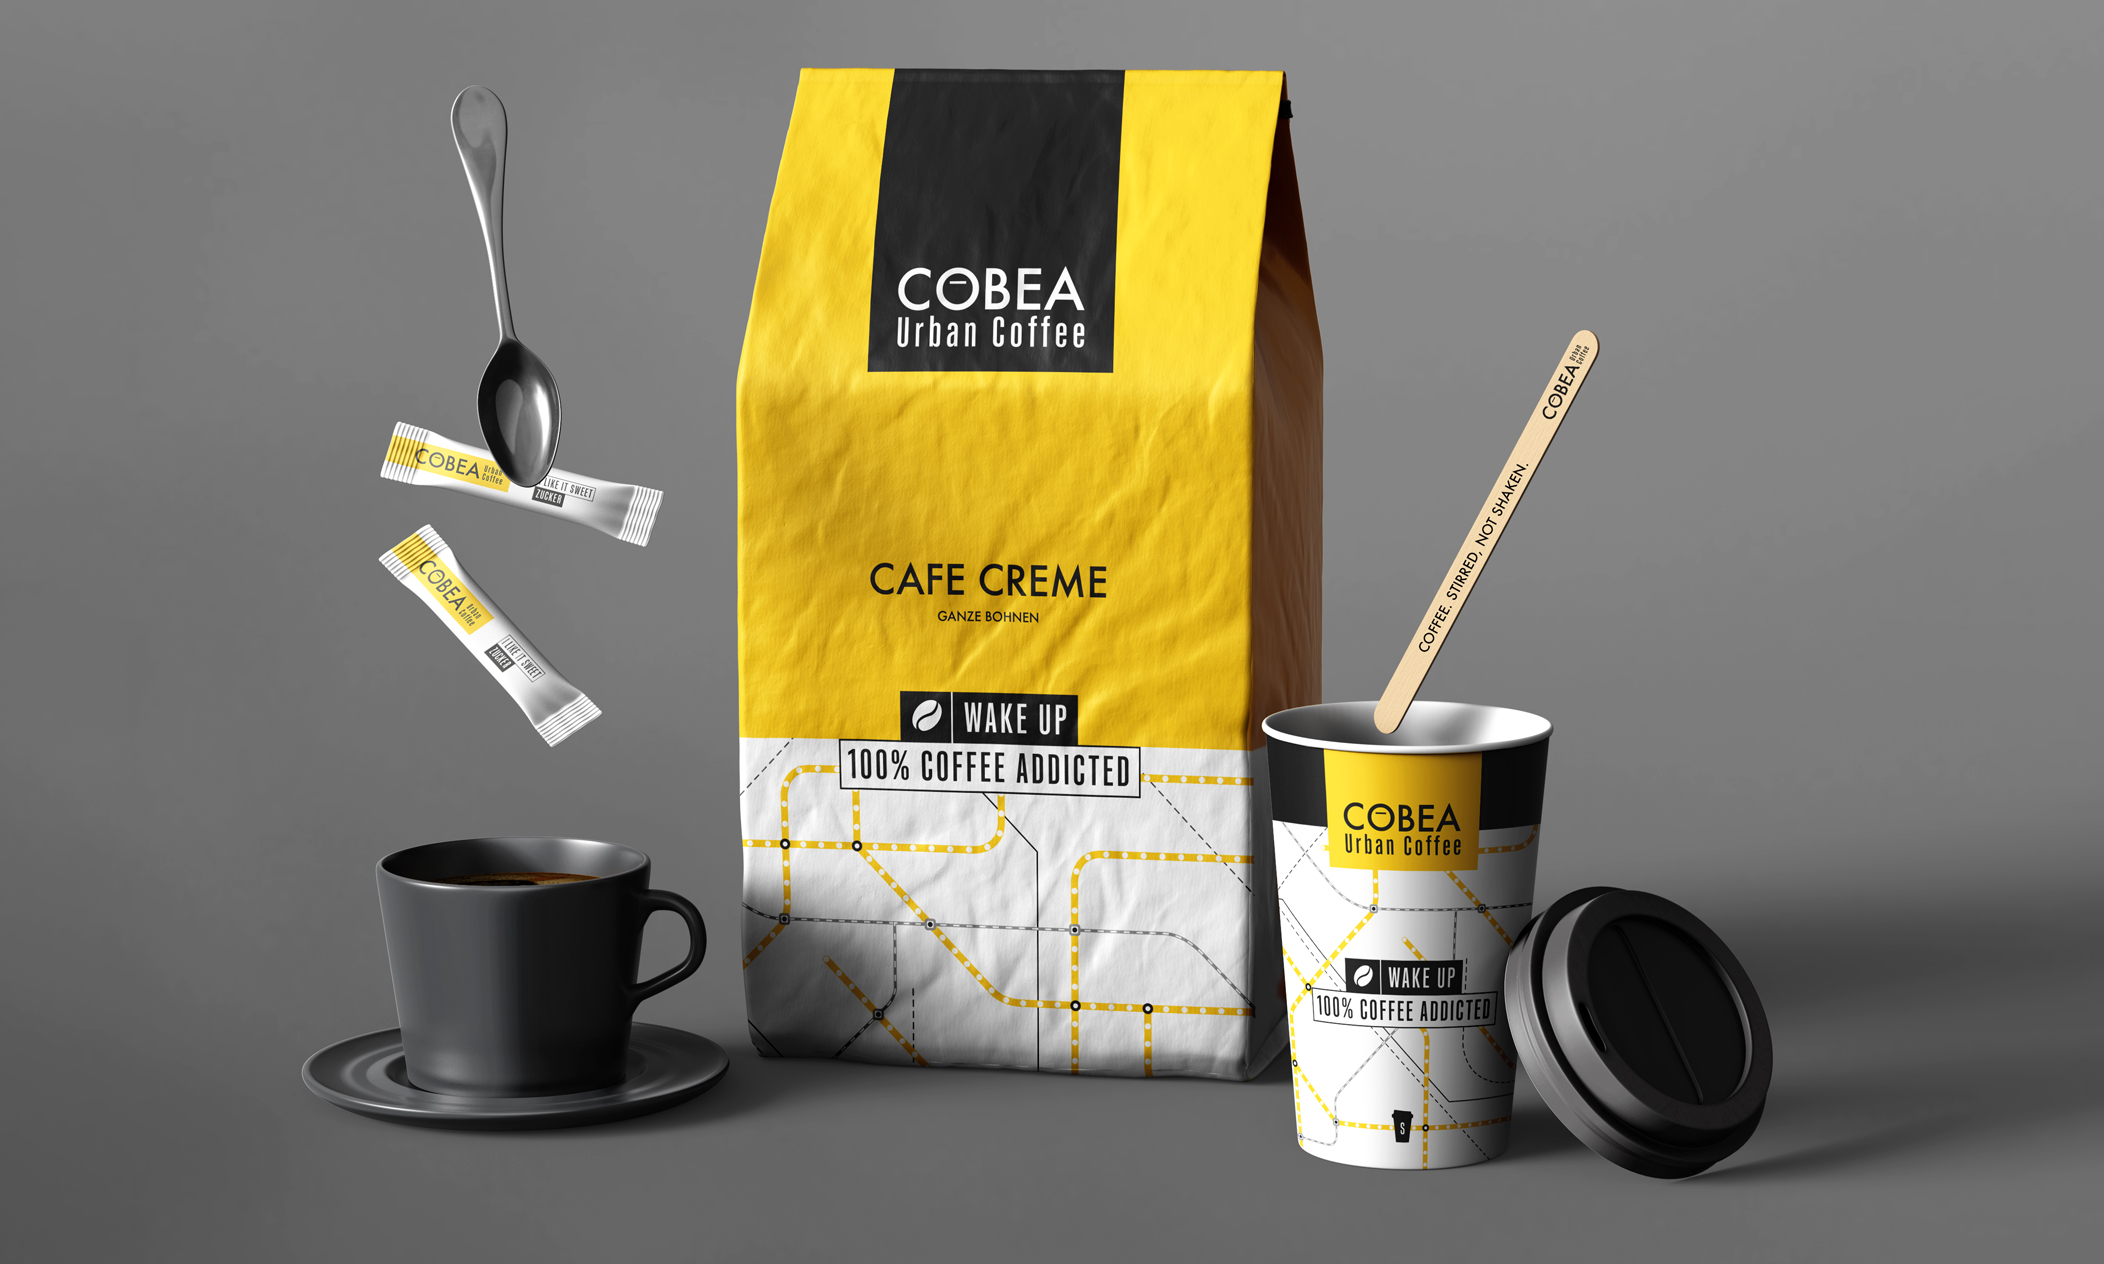 COBEA Urban Coffee